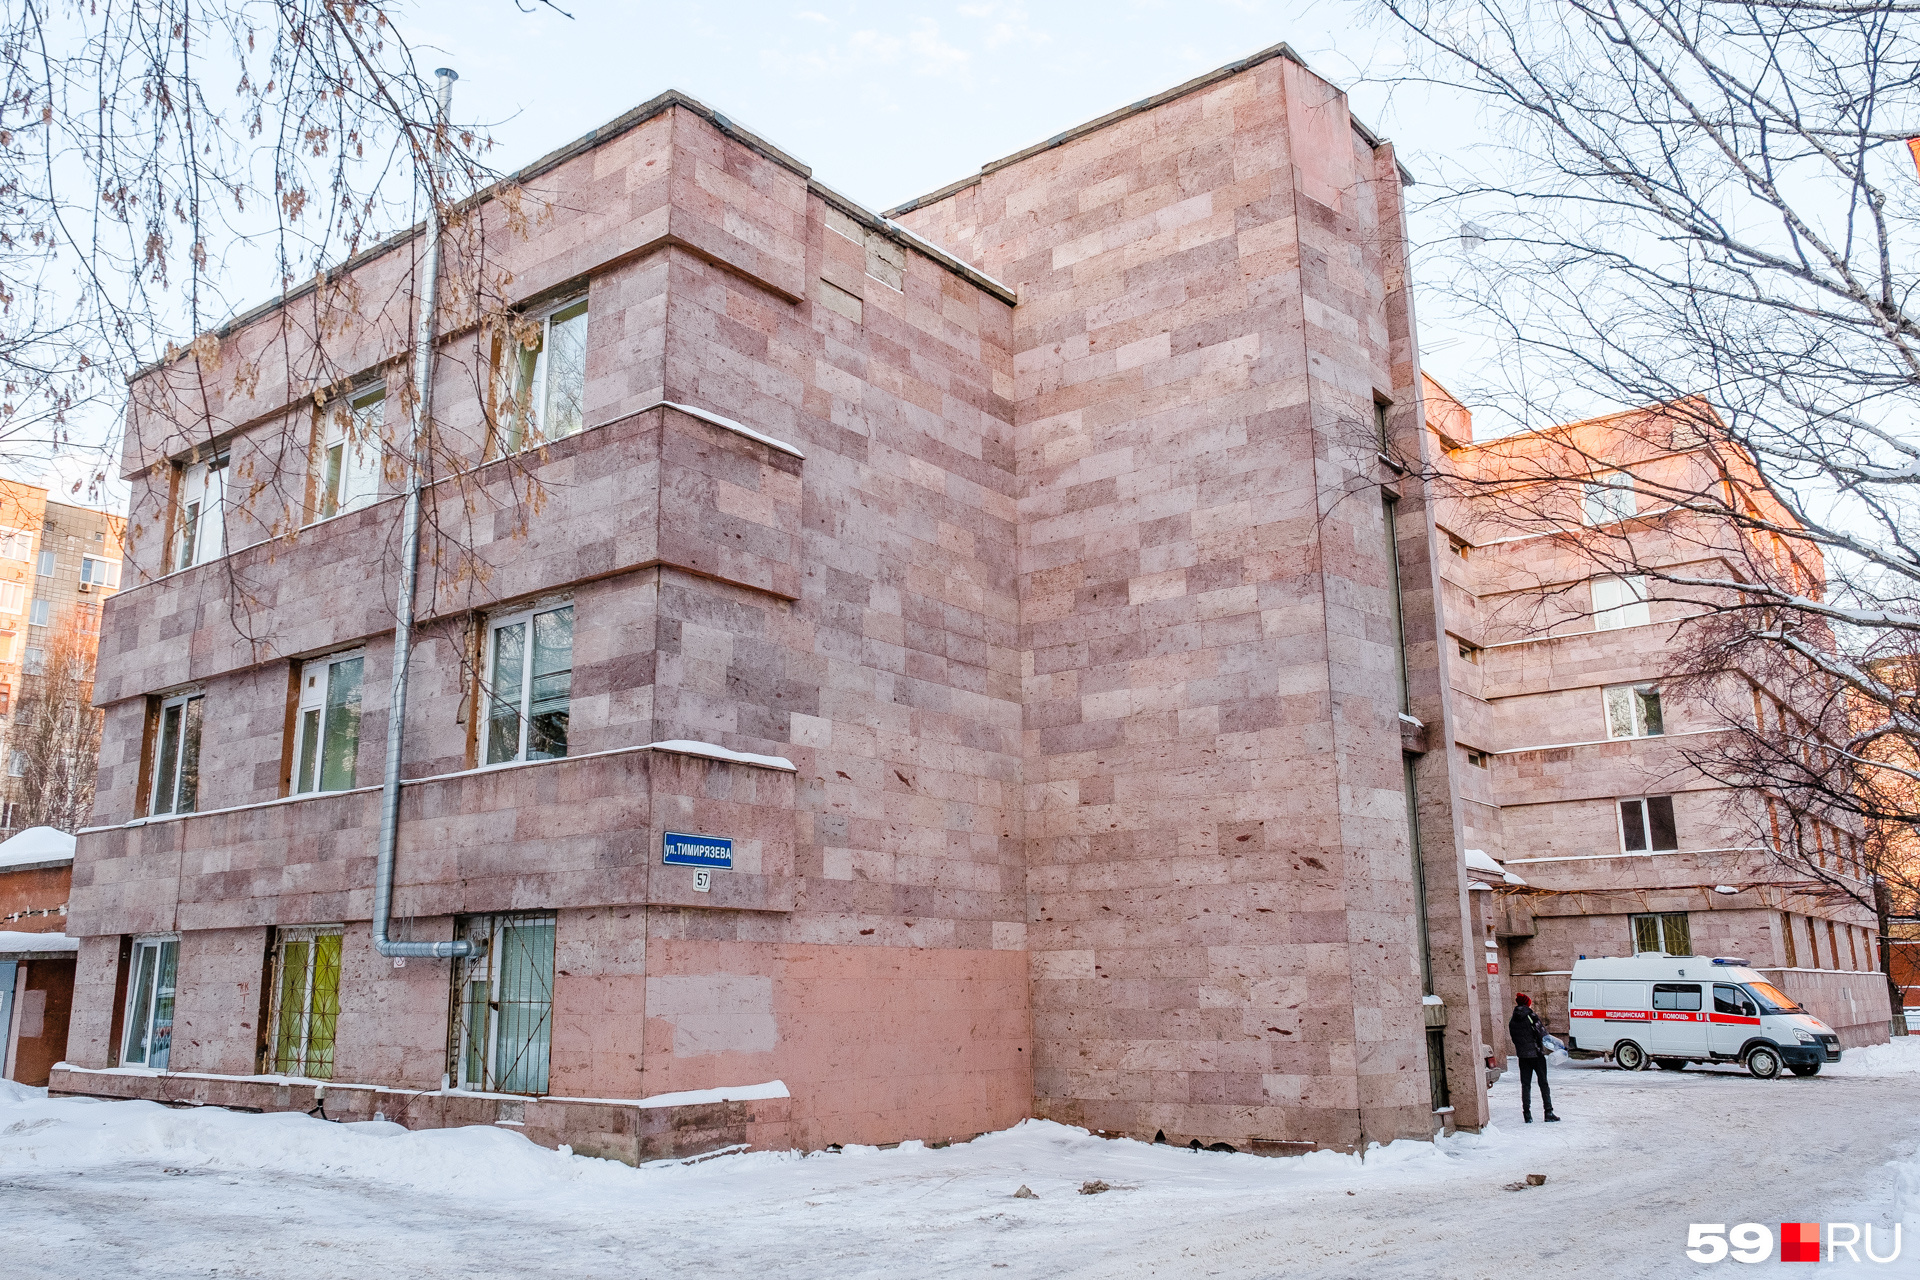 Один из филиалов больницы Пигучина построен в поздние советские годы, но постройка унаследовала принципы все того же конструктивистского стиля